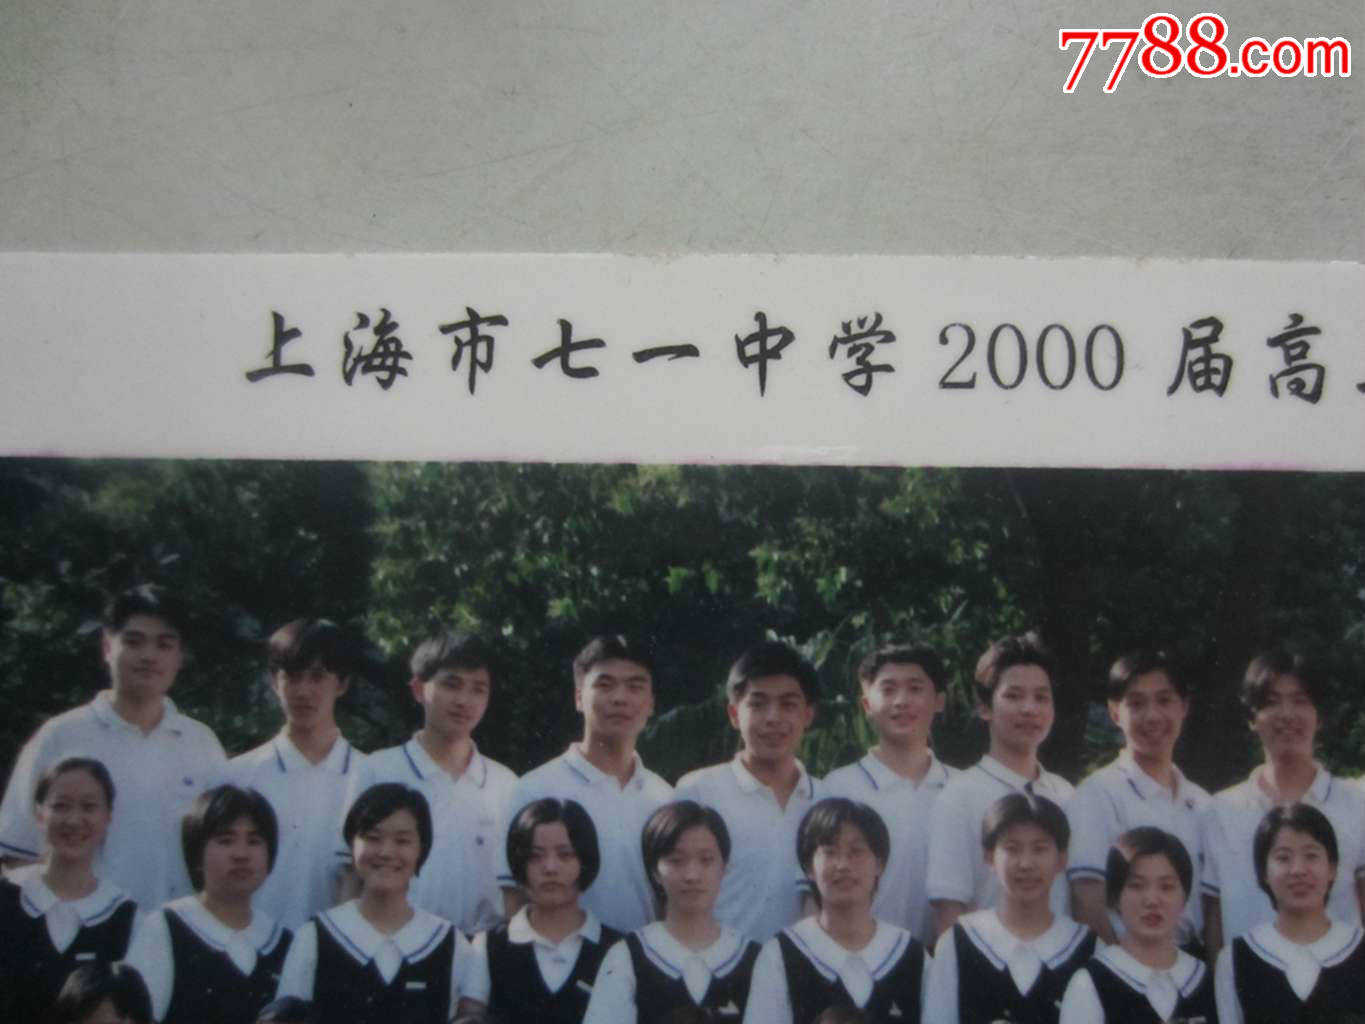 上海市七一中学2000届高三(1)班毕业留影(老照片)